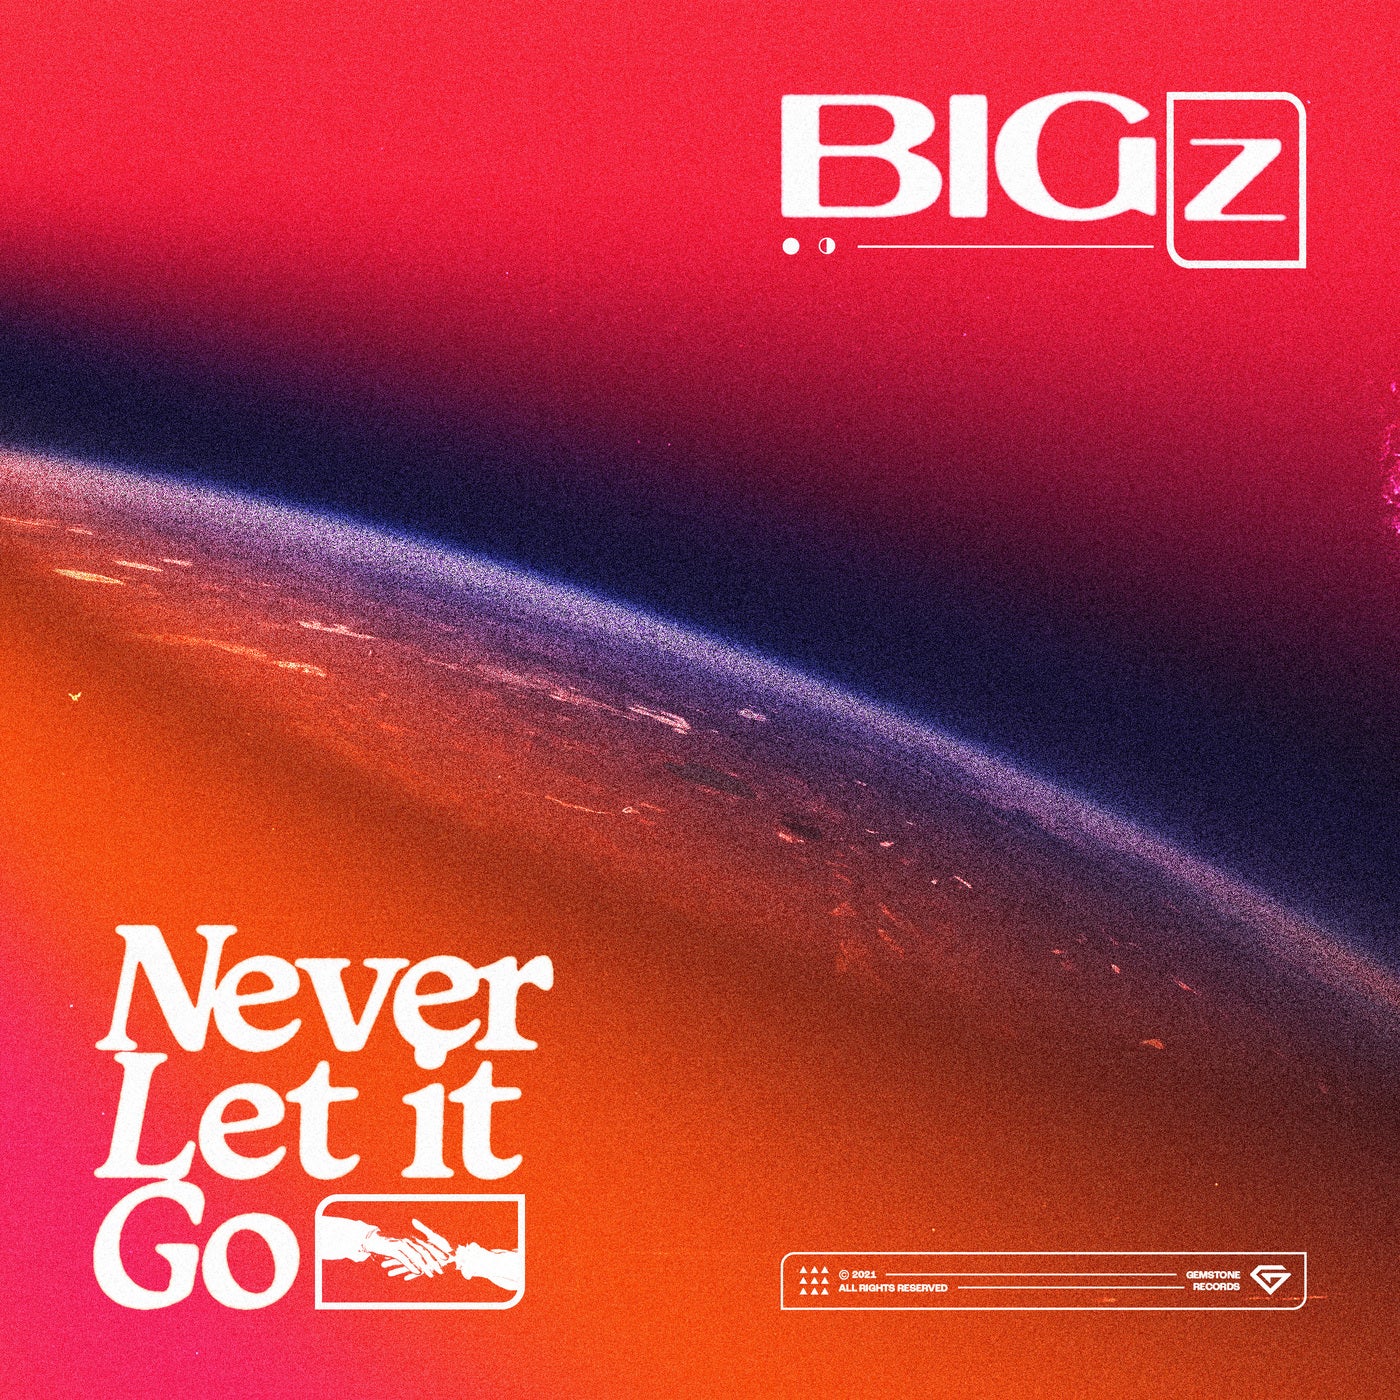 Big Z music download - Beatport